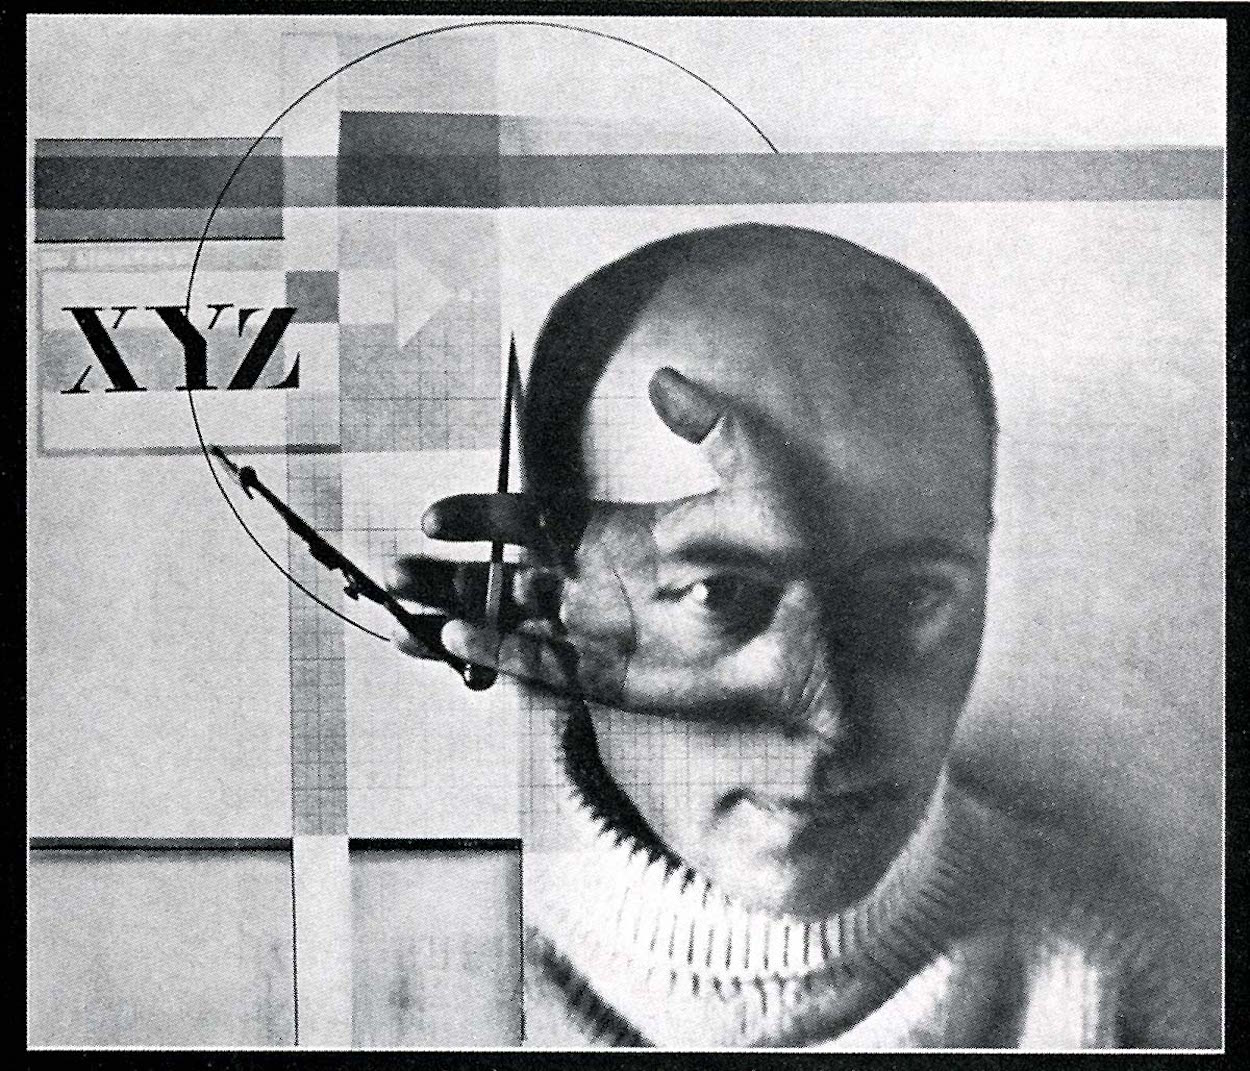 El Lissitzky - 23 novembre 1890 - 30 dicembre 1941